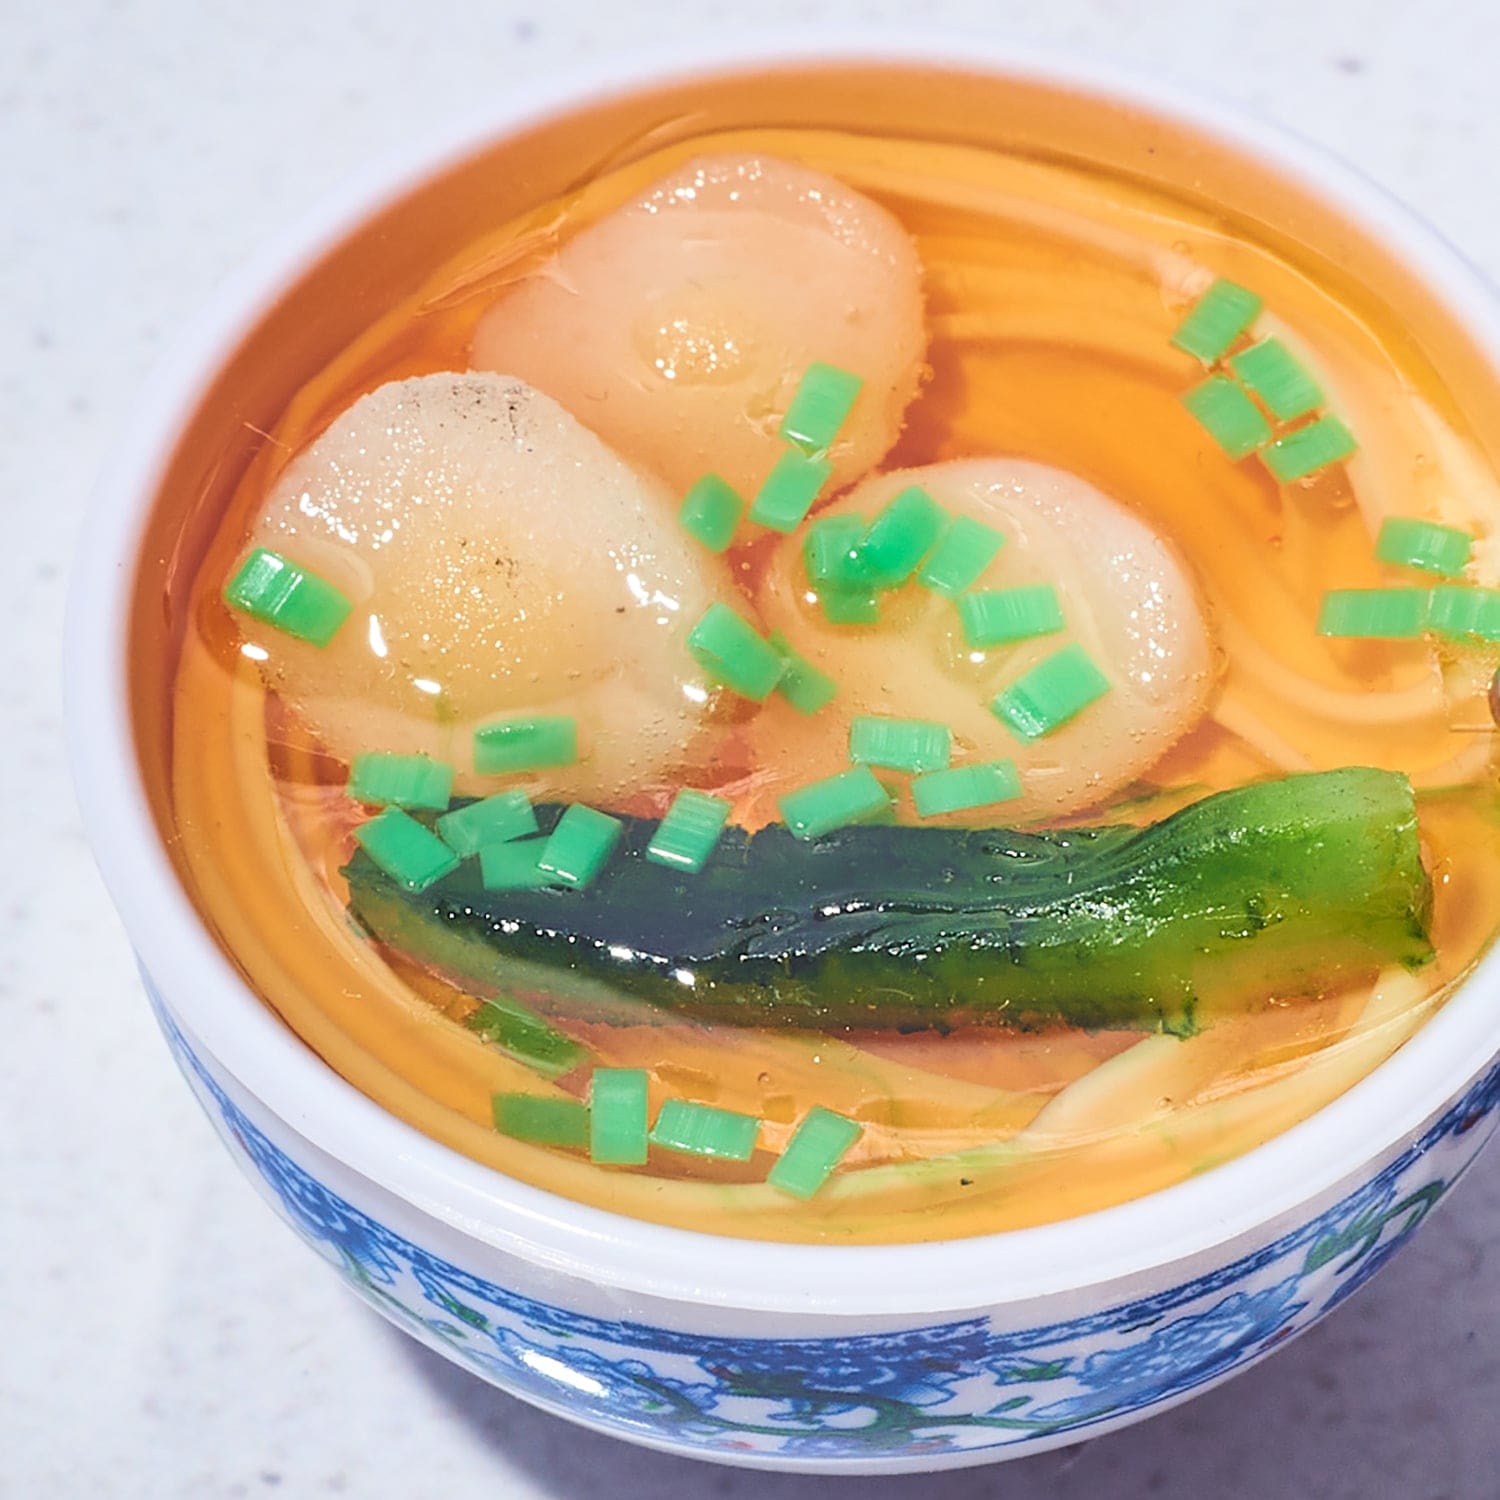 Food Keychain - Egg Noodle Soup Food Novelty - Funny